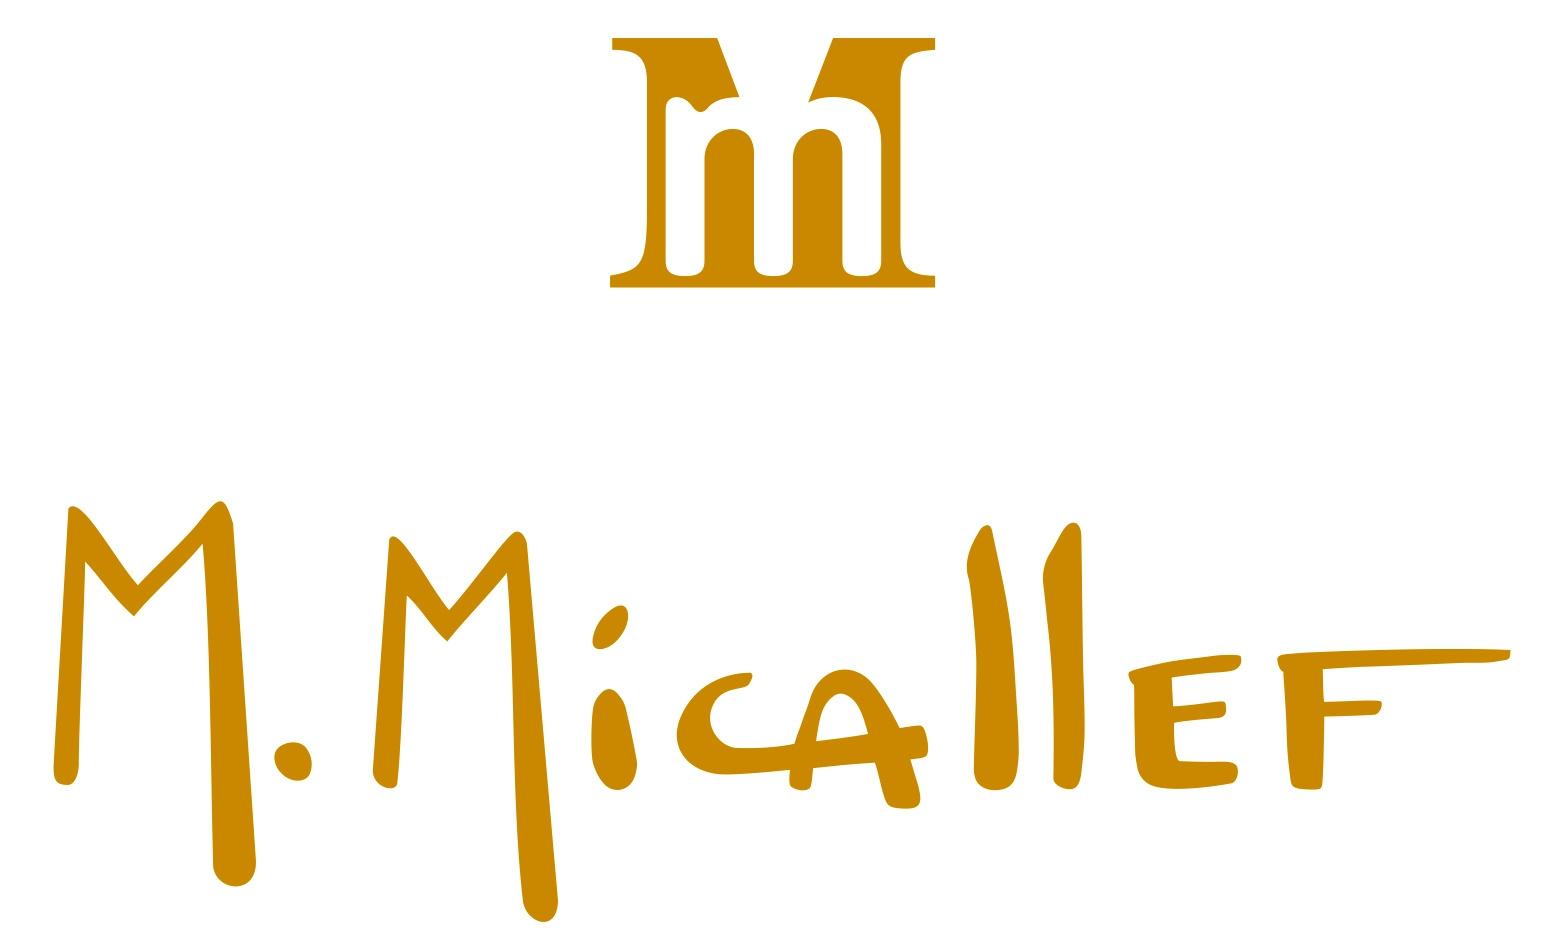 M. Micallef